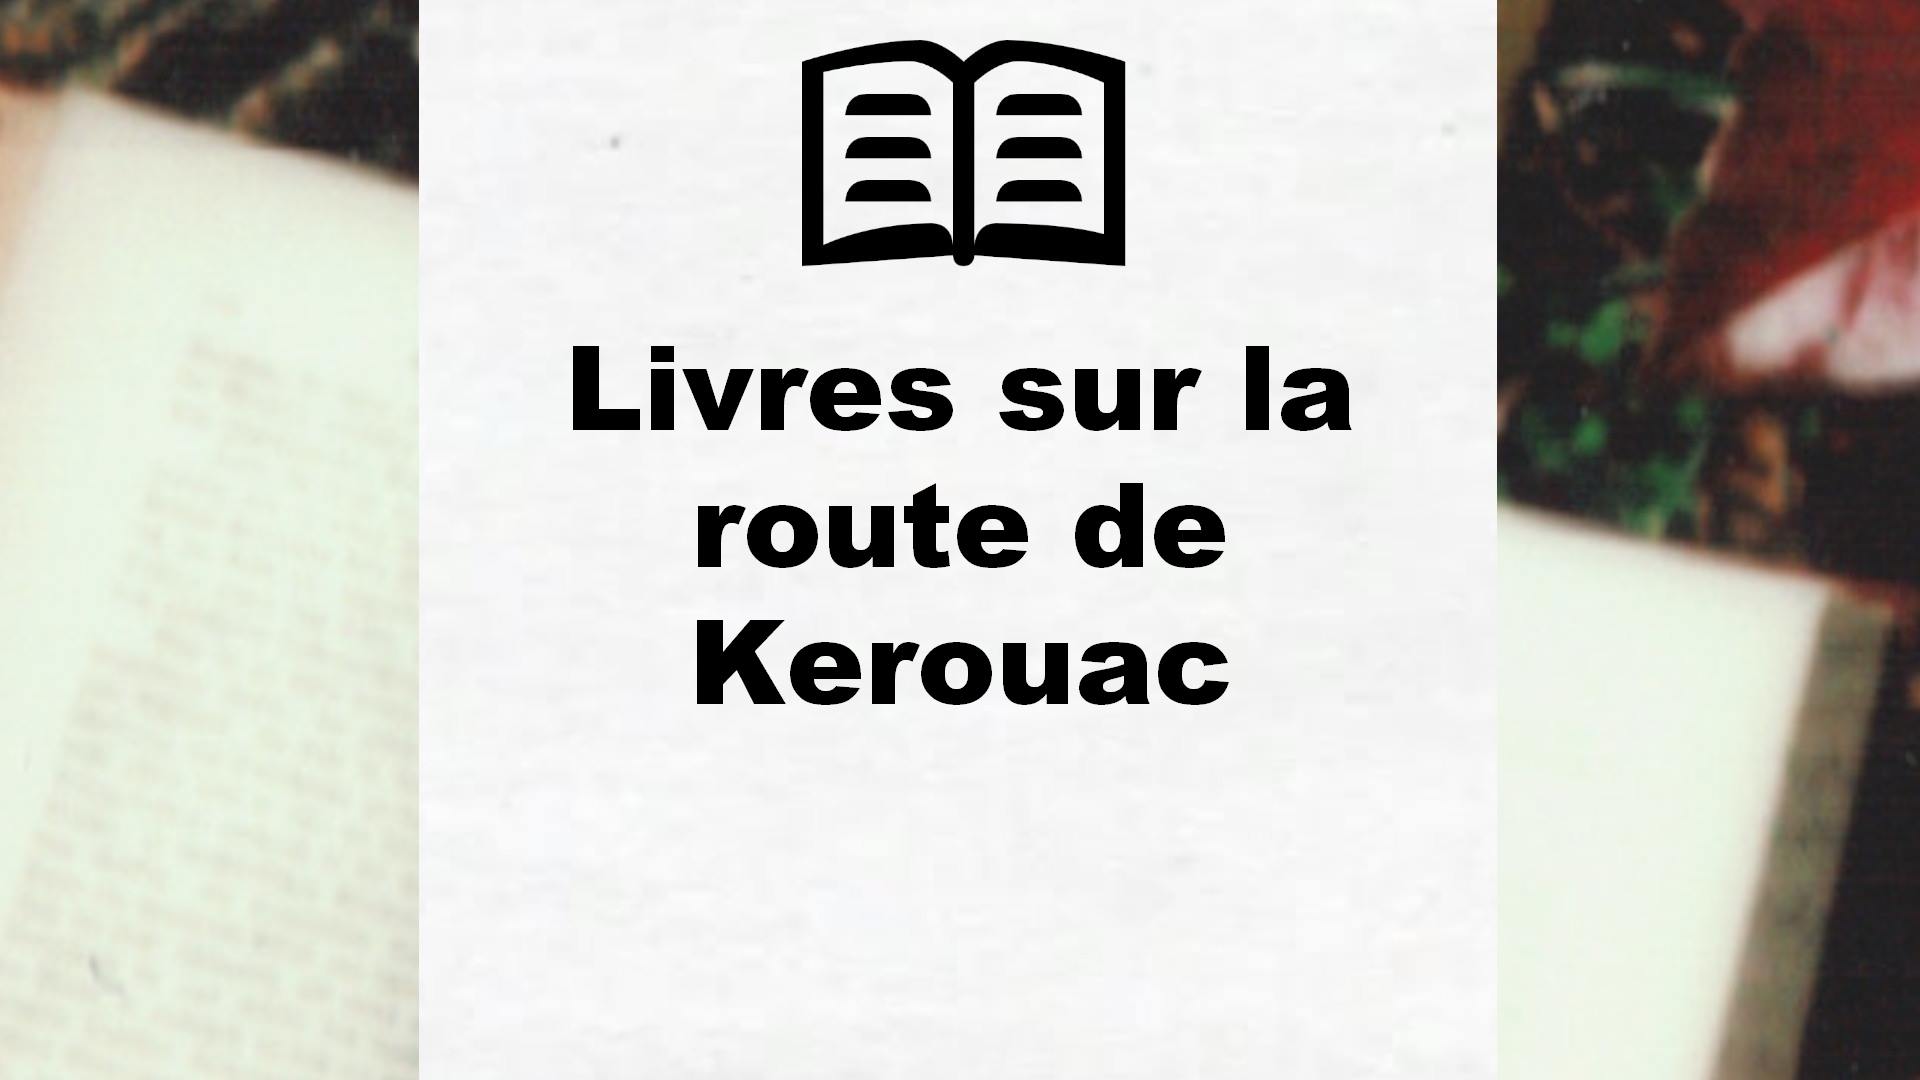 Livres sur la route de Kerouac